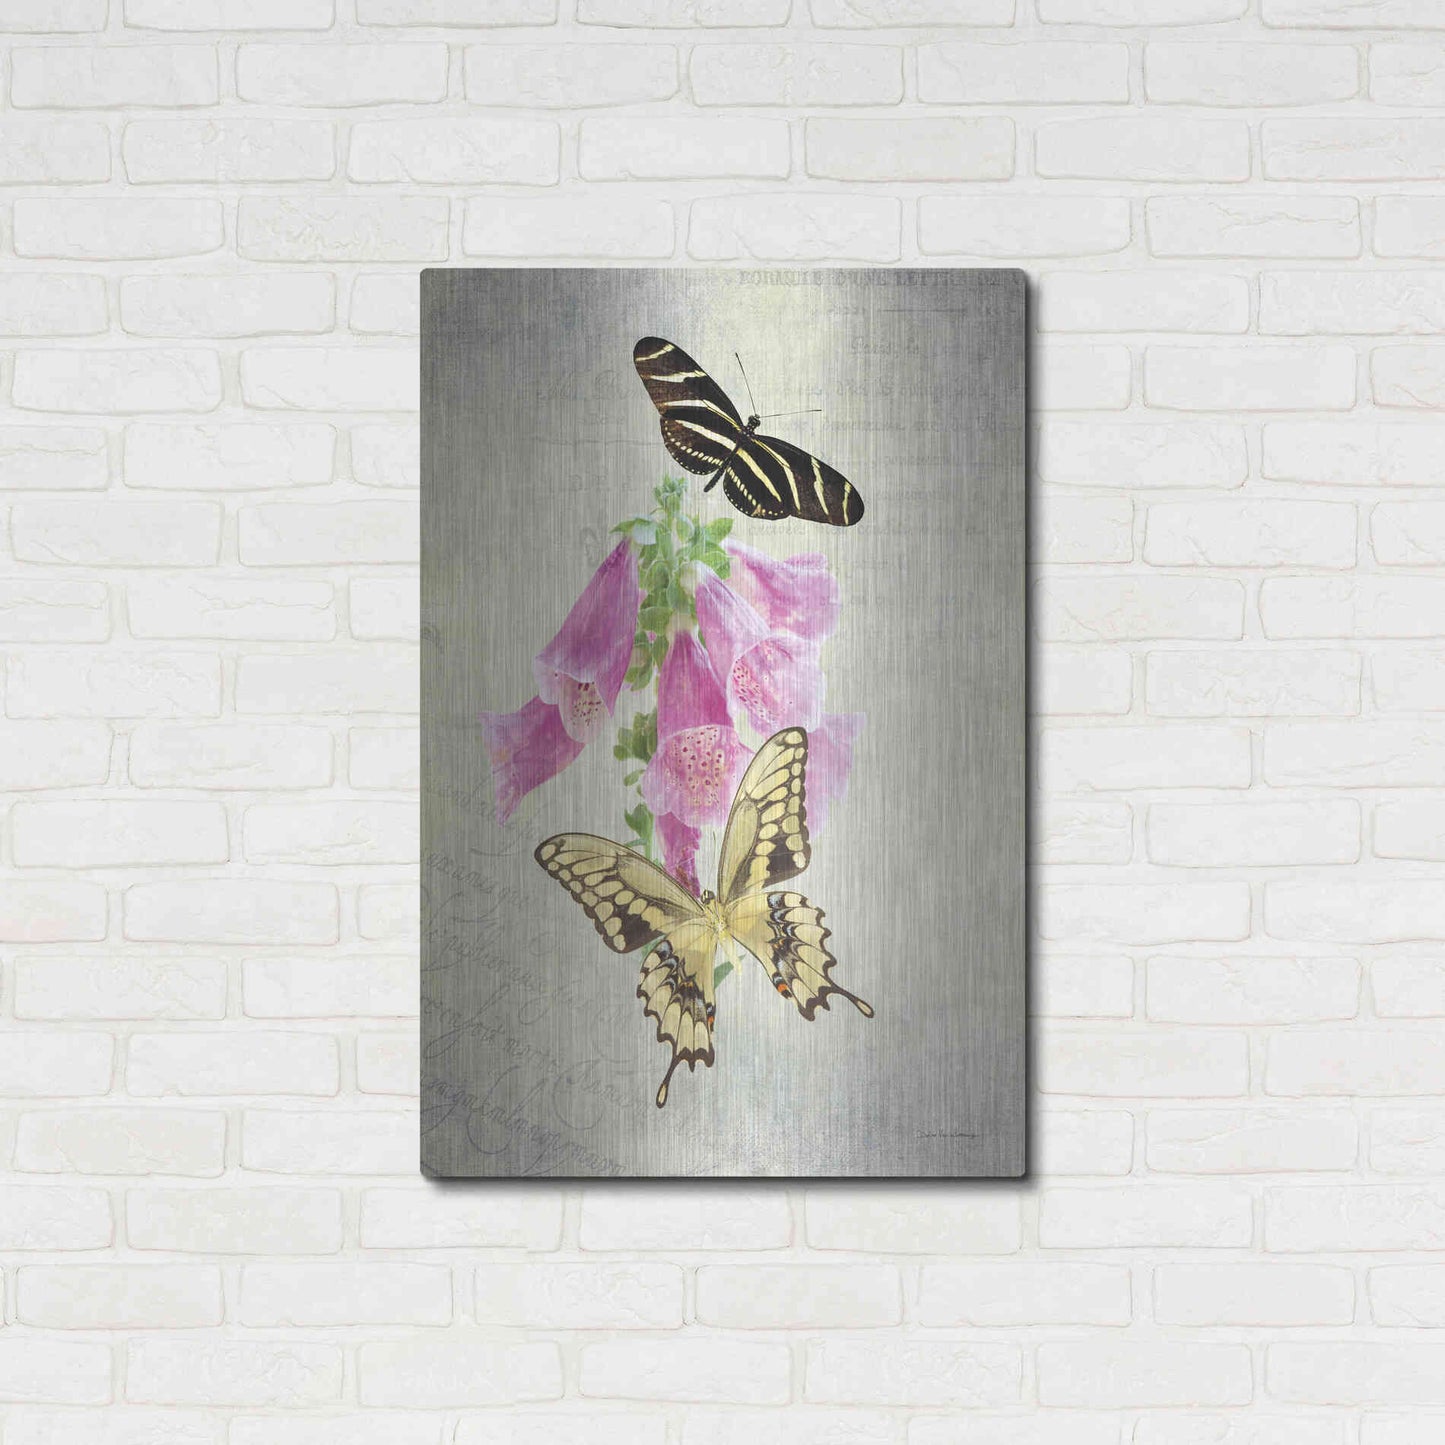 Luxe Metal Art 'Butterfly Botanical IV' by Debra Van Swearingen, Metal Wall Art,24x36